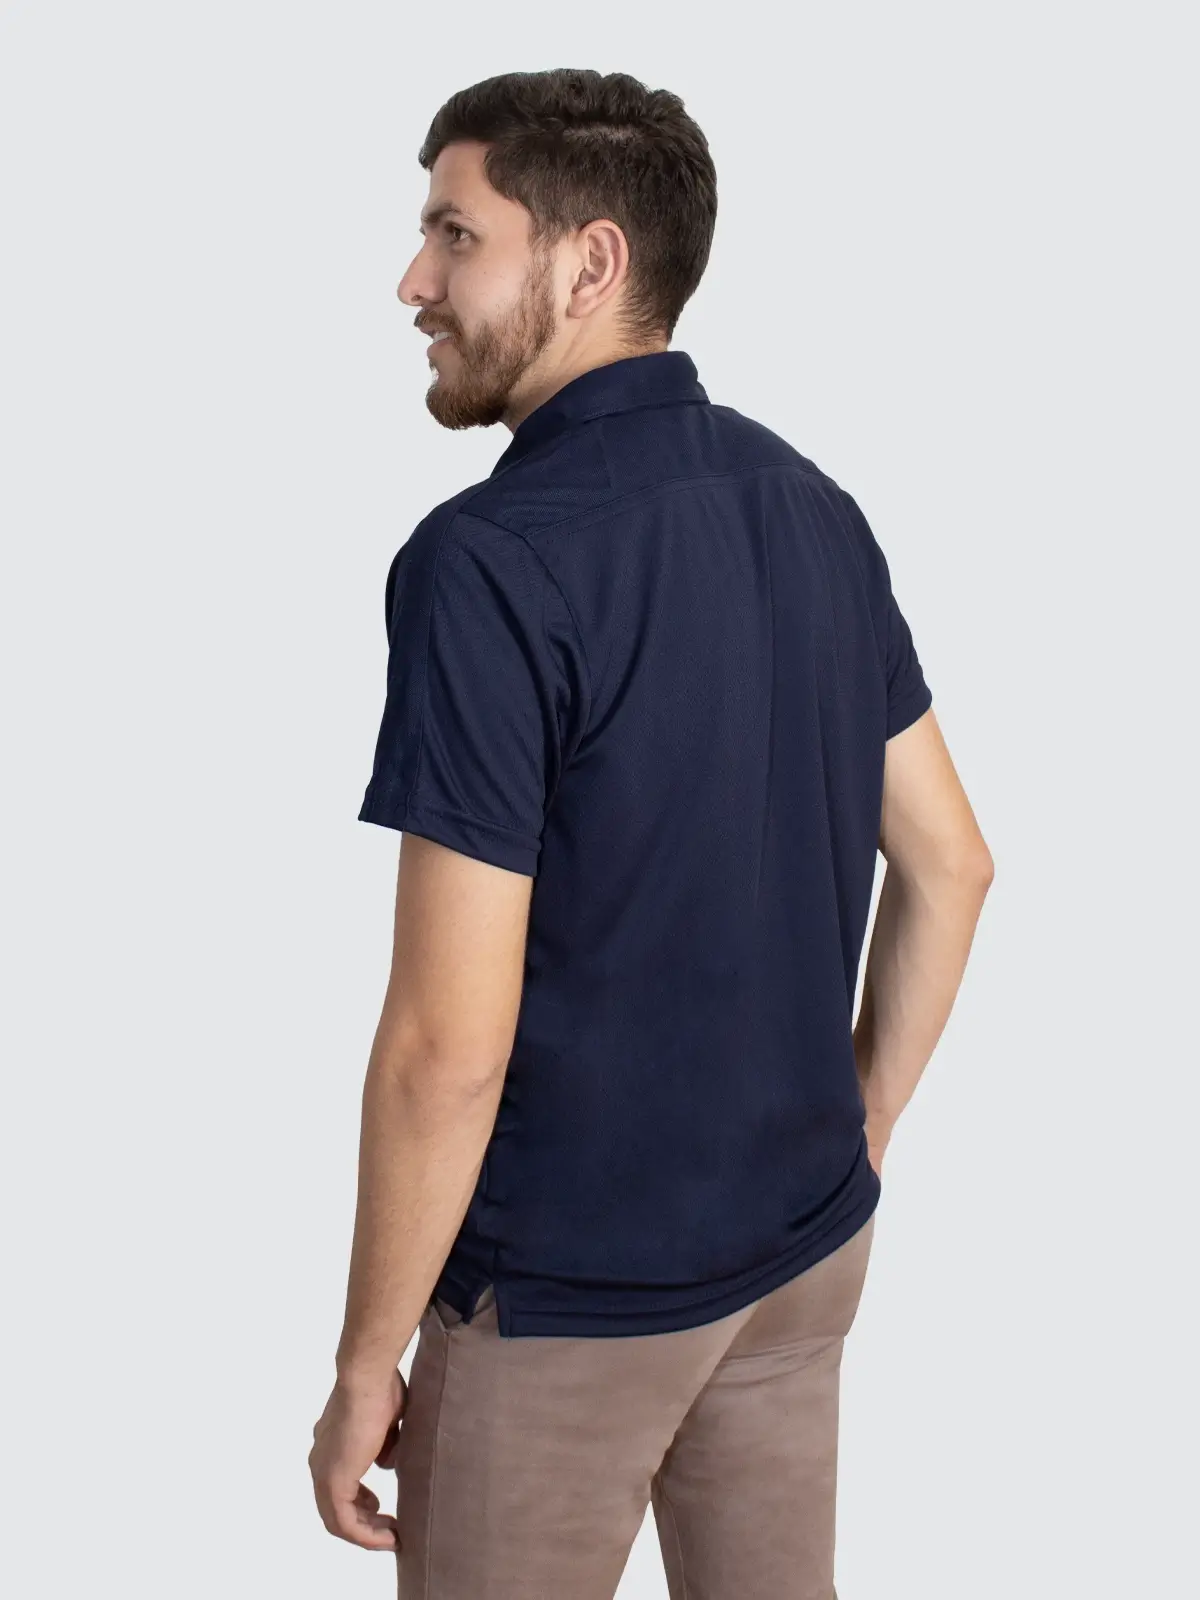 polo shirt navy color